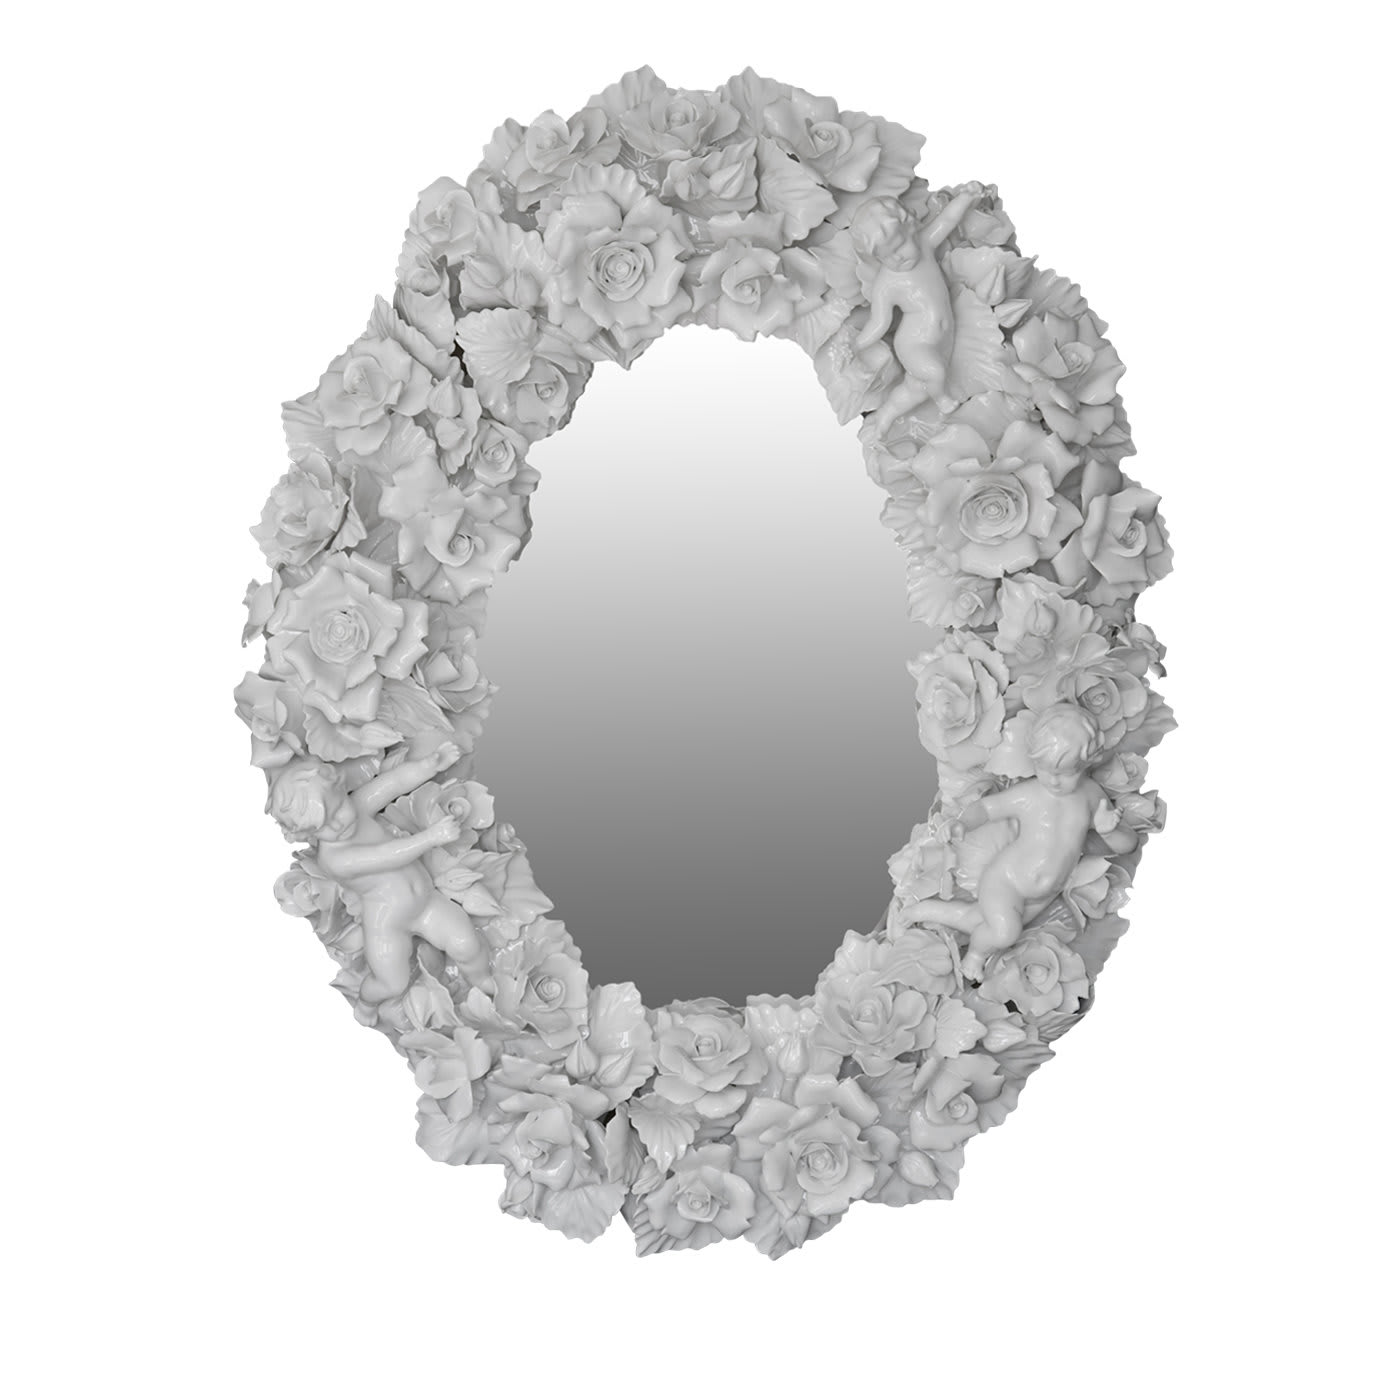 Capodimonte Ceramic Wall Mirror - I Borbone Capodimonte